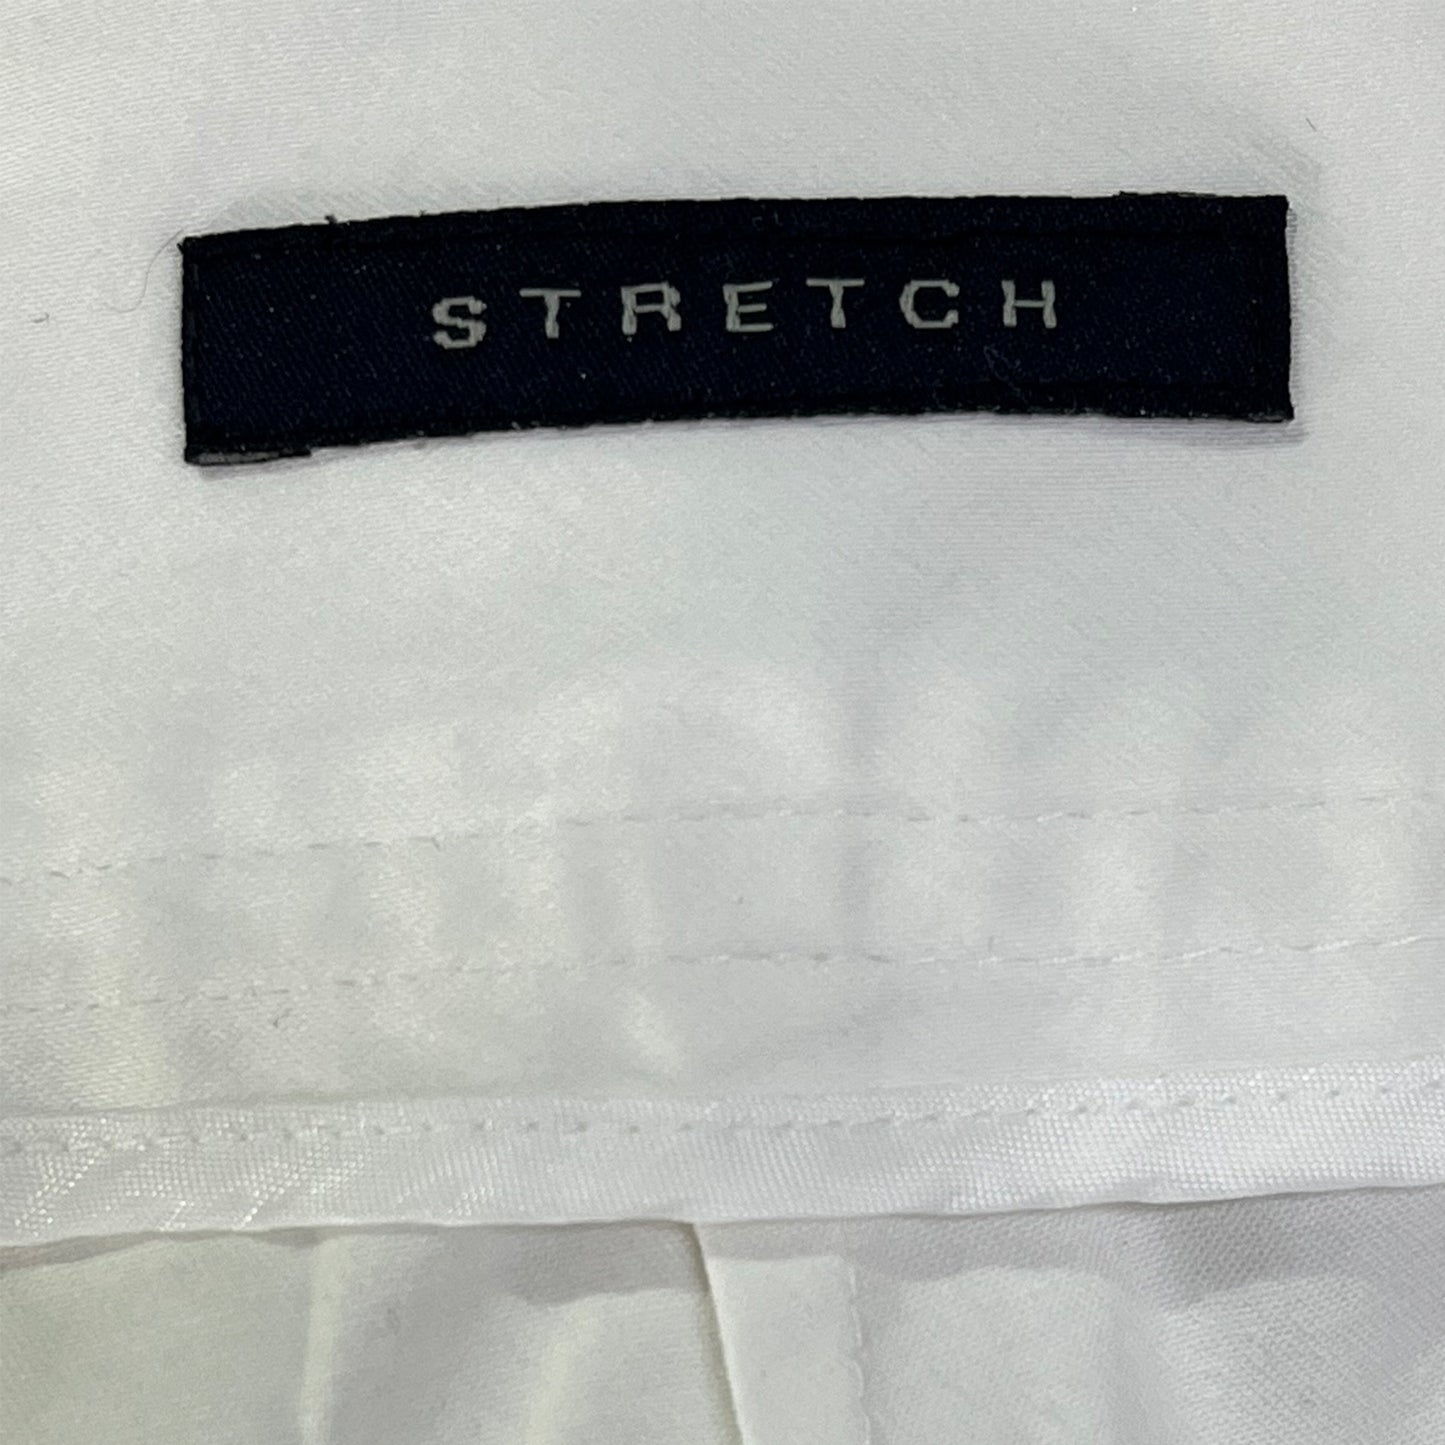 Anne Klein Pants Stretch White Size 6 SKU 000296-14